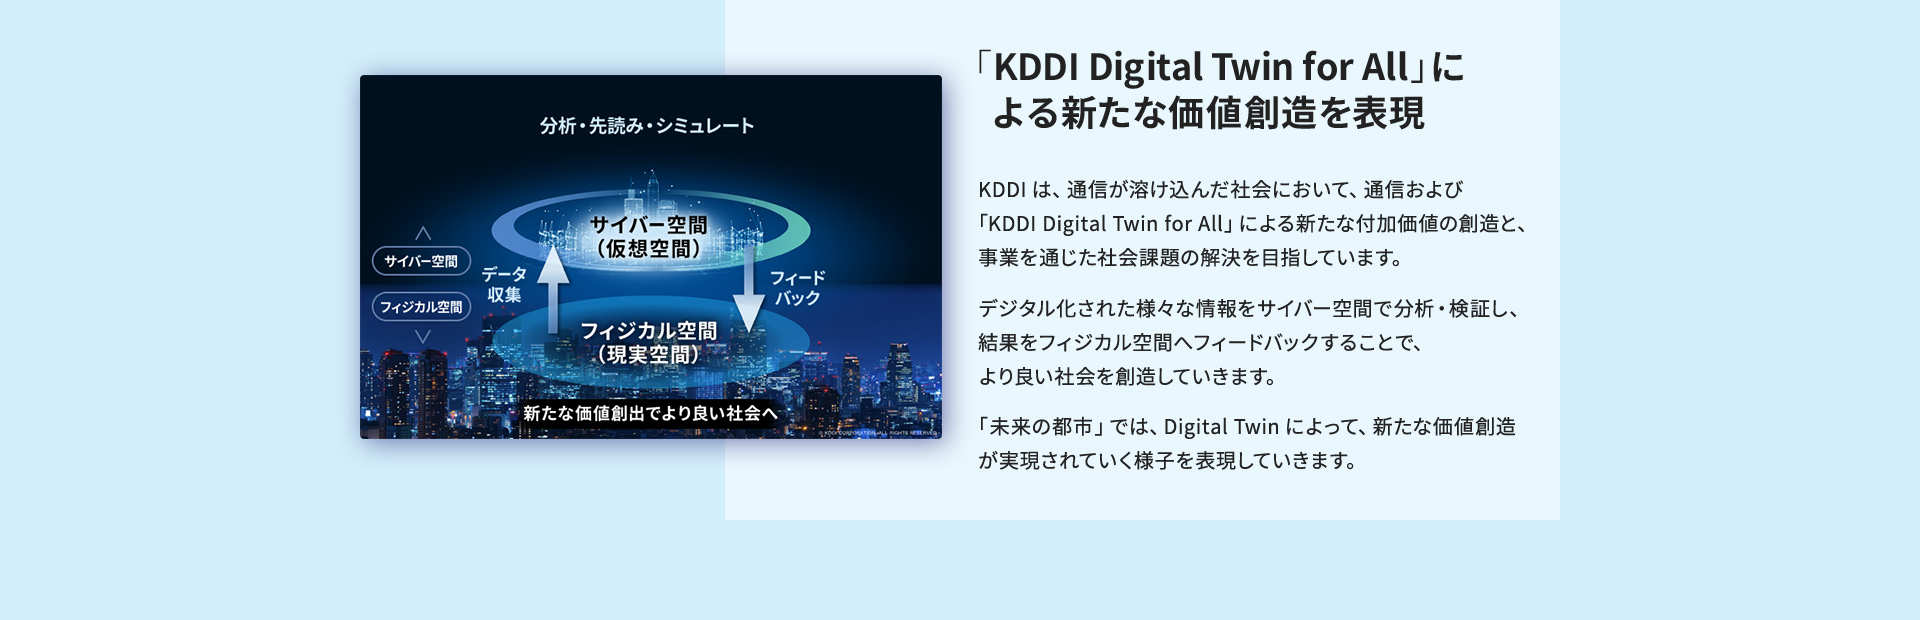 「KDDI Digital Twin for All」による新たな価値創造を表現 KDDIは、通信が溶け込んだ社会において、通信および「KDDI Digital Twin for All」による新たな付加価値の創造と、事業を通じた社会課題の解決を目指しています。デジタル化された様々な情報をサイバー空間で分析・検証し、結果をフィジカル空間へフィードバックすることで、より良い社会を創造していきます。「未来の都市」では、Digital Twinによって、新たな価値創造が実現されていく様子を表現していきます。